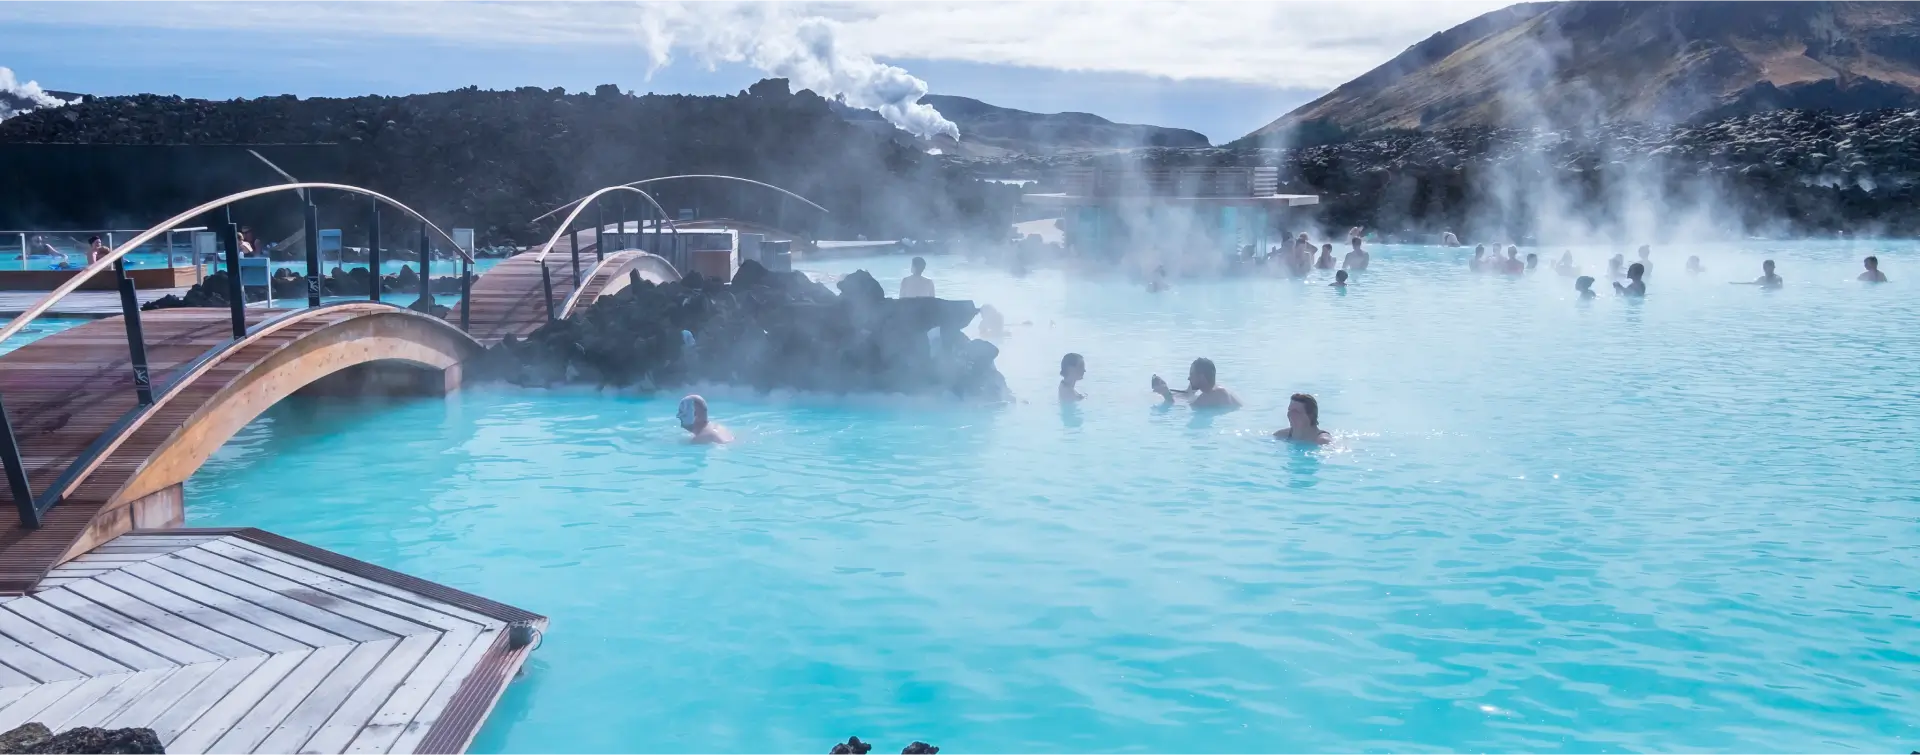 Iceland Holidays